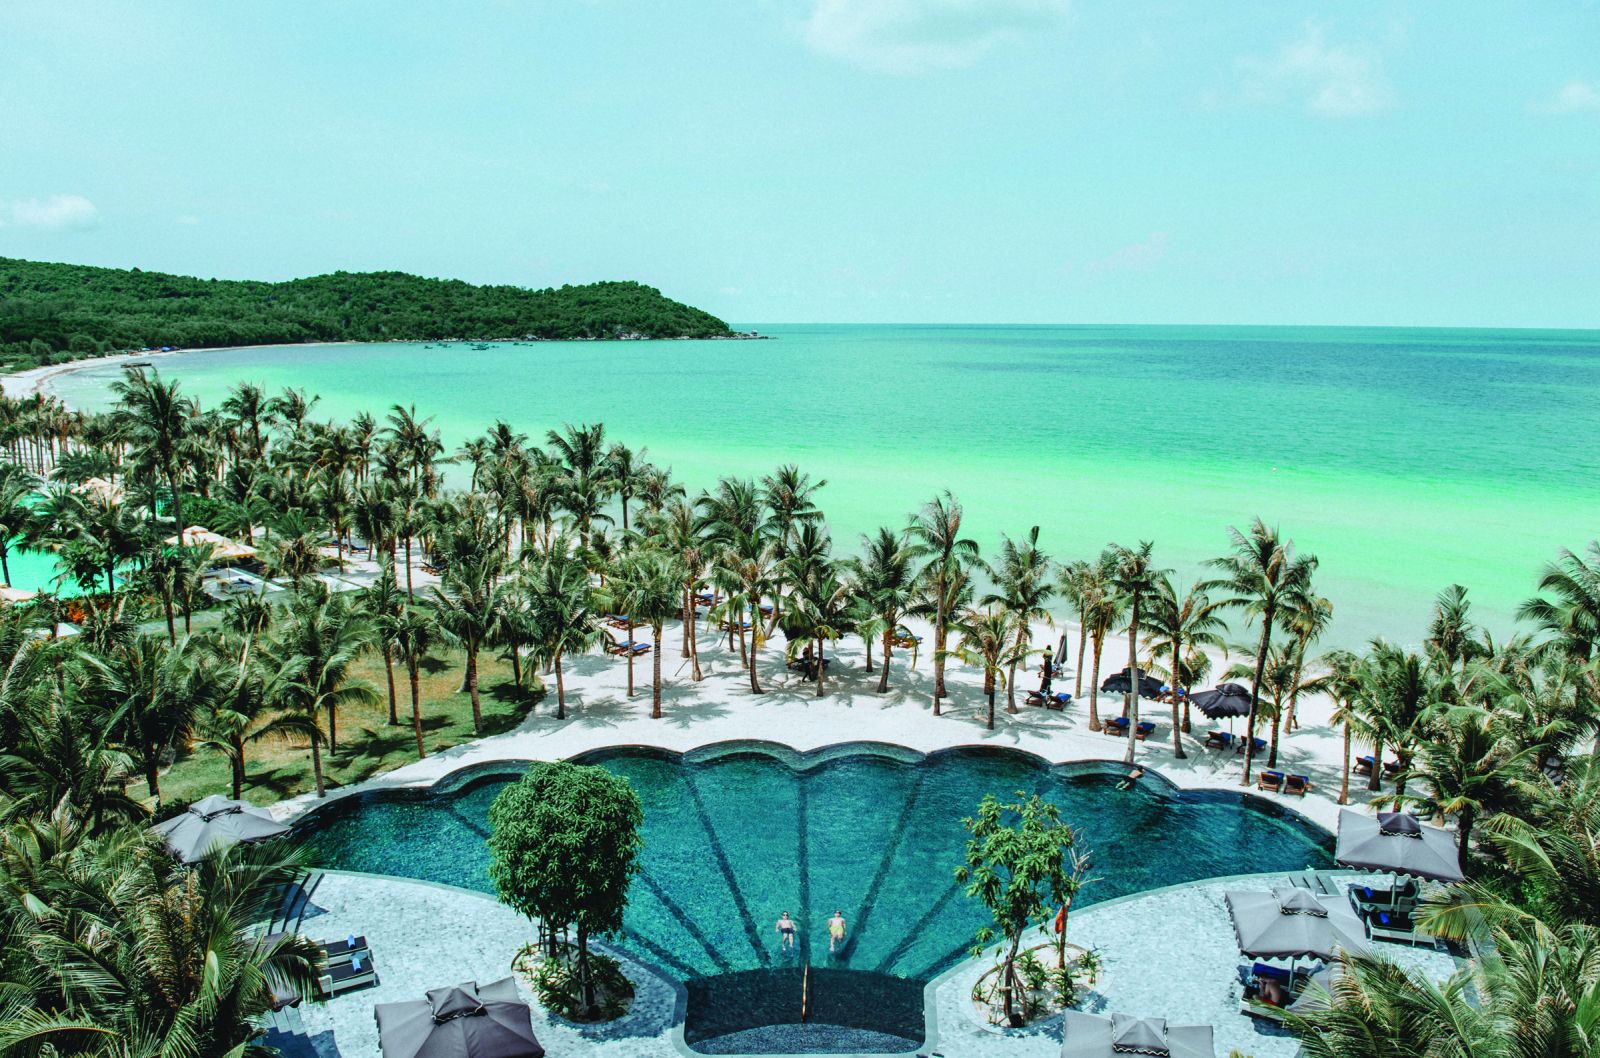  J.W Marriott Phu Quoc Resort- Khu nghỉ dưỡng sang trọng dành cho đám cưới hàng đầu Châu Á 2022.